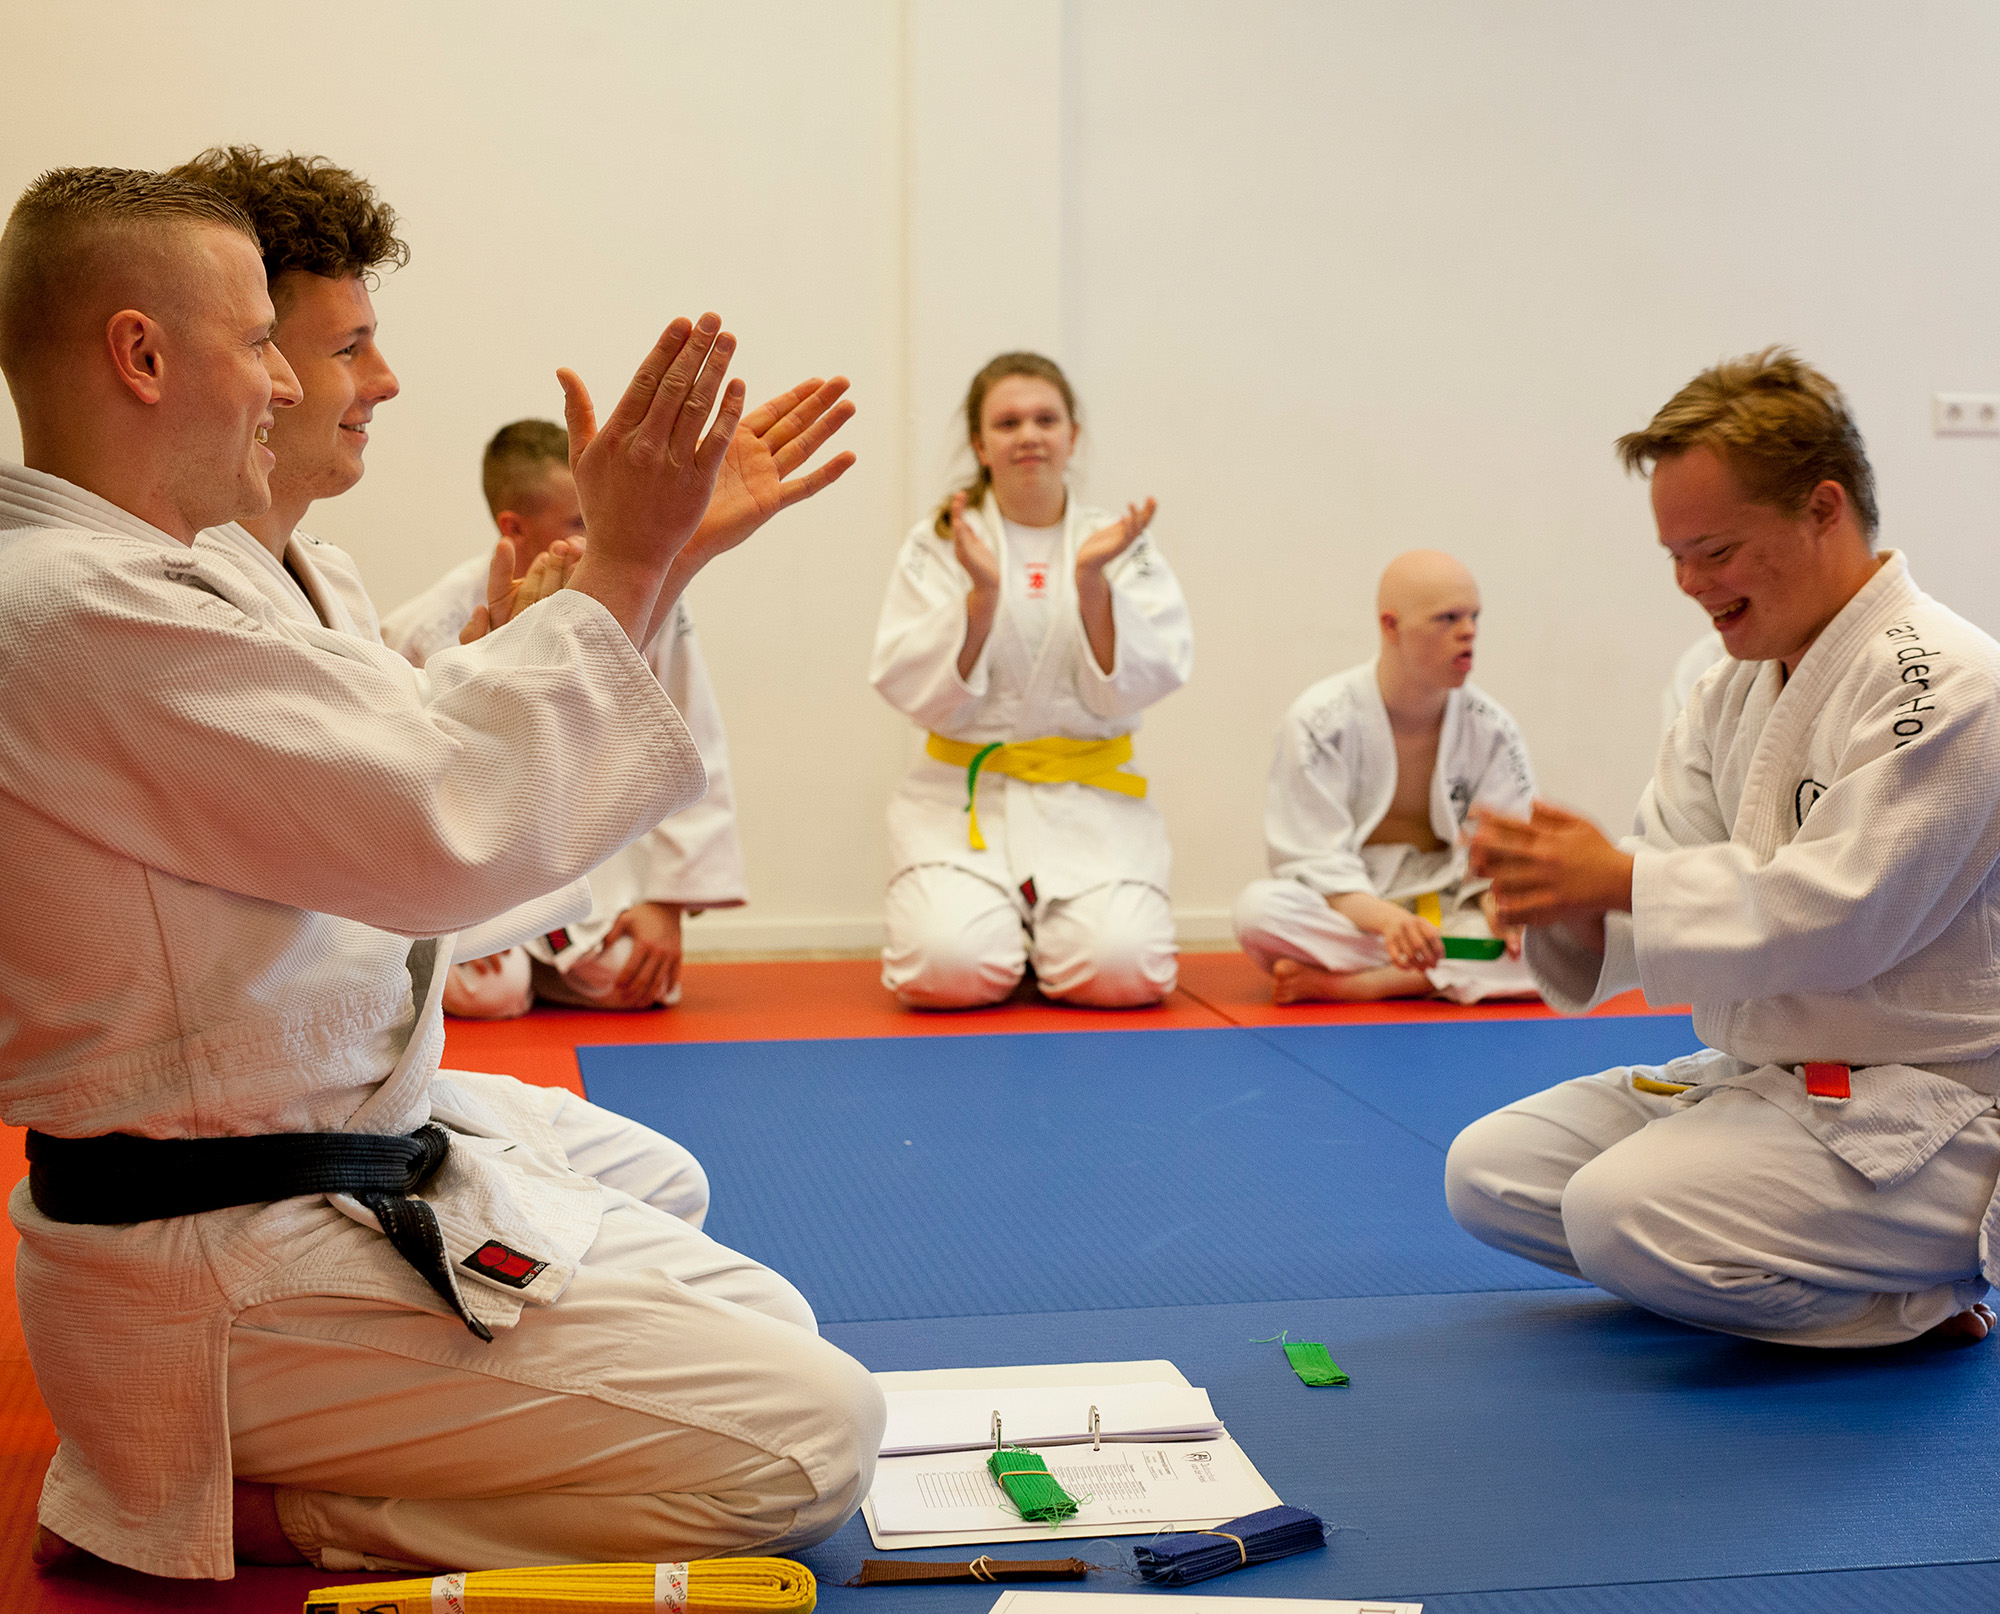 Judoschool van der Hoek